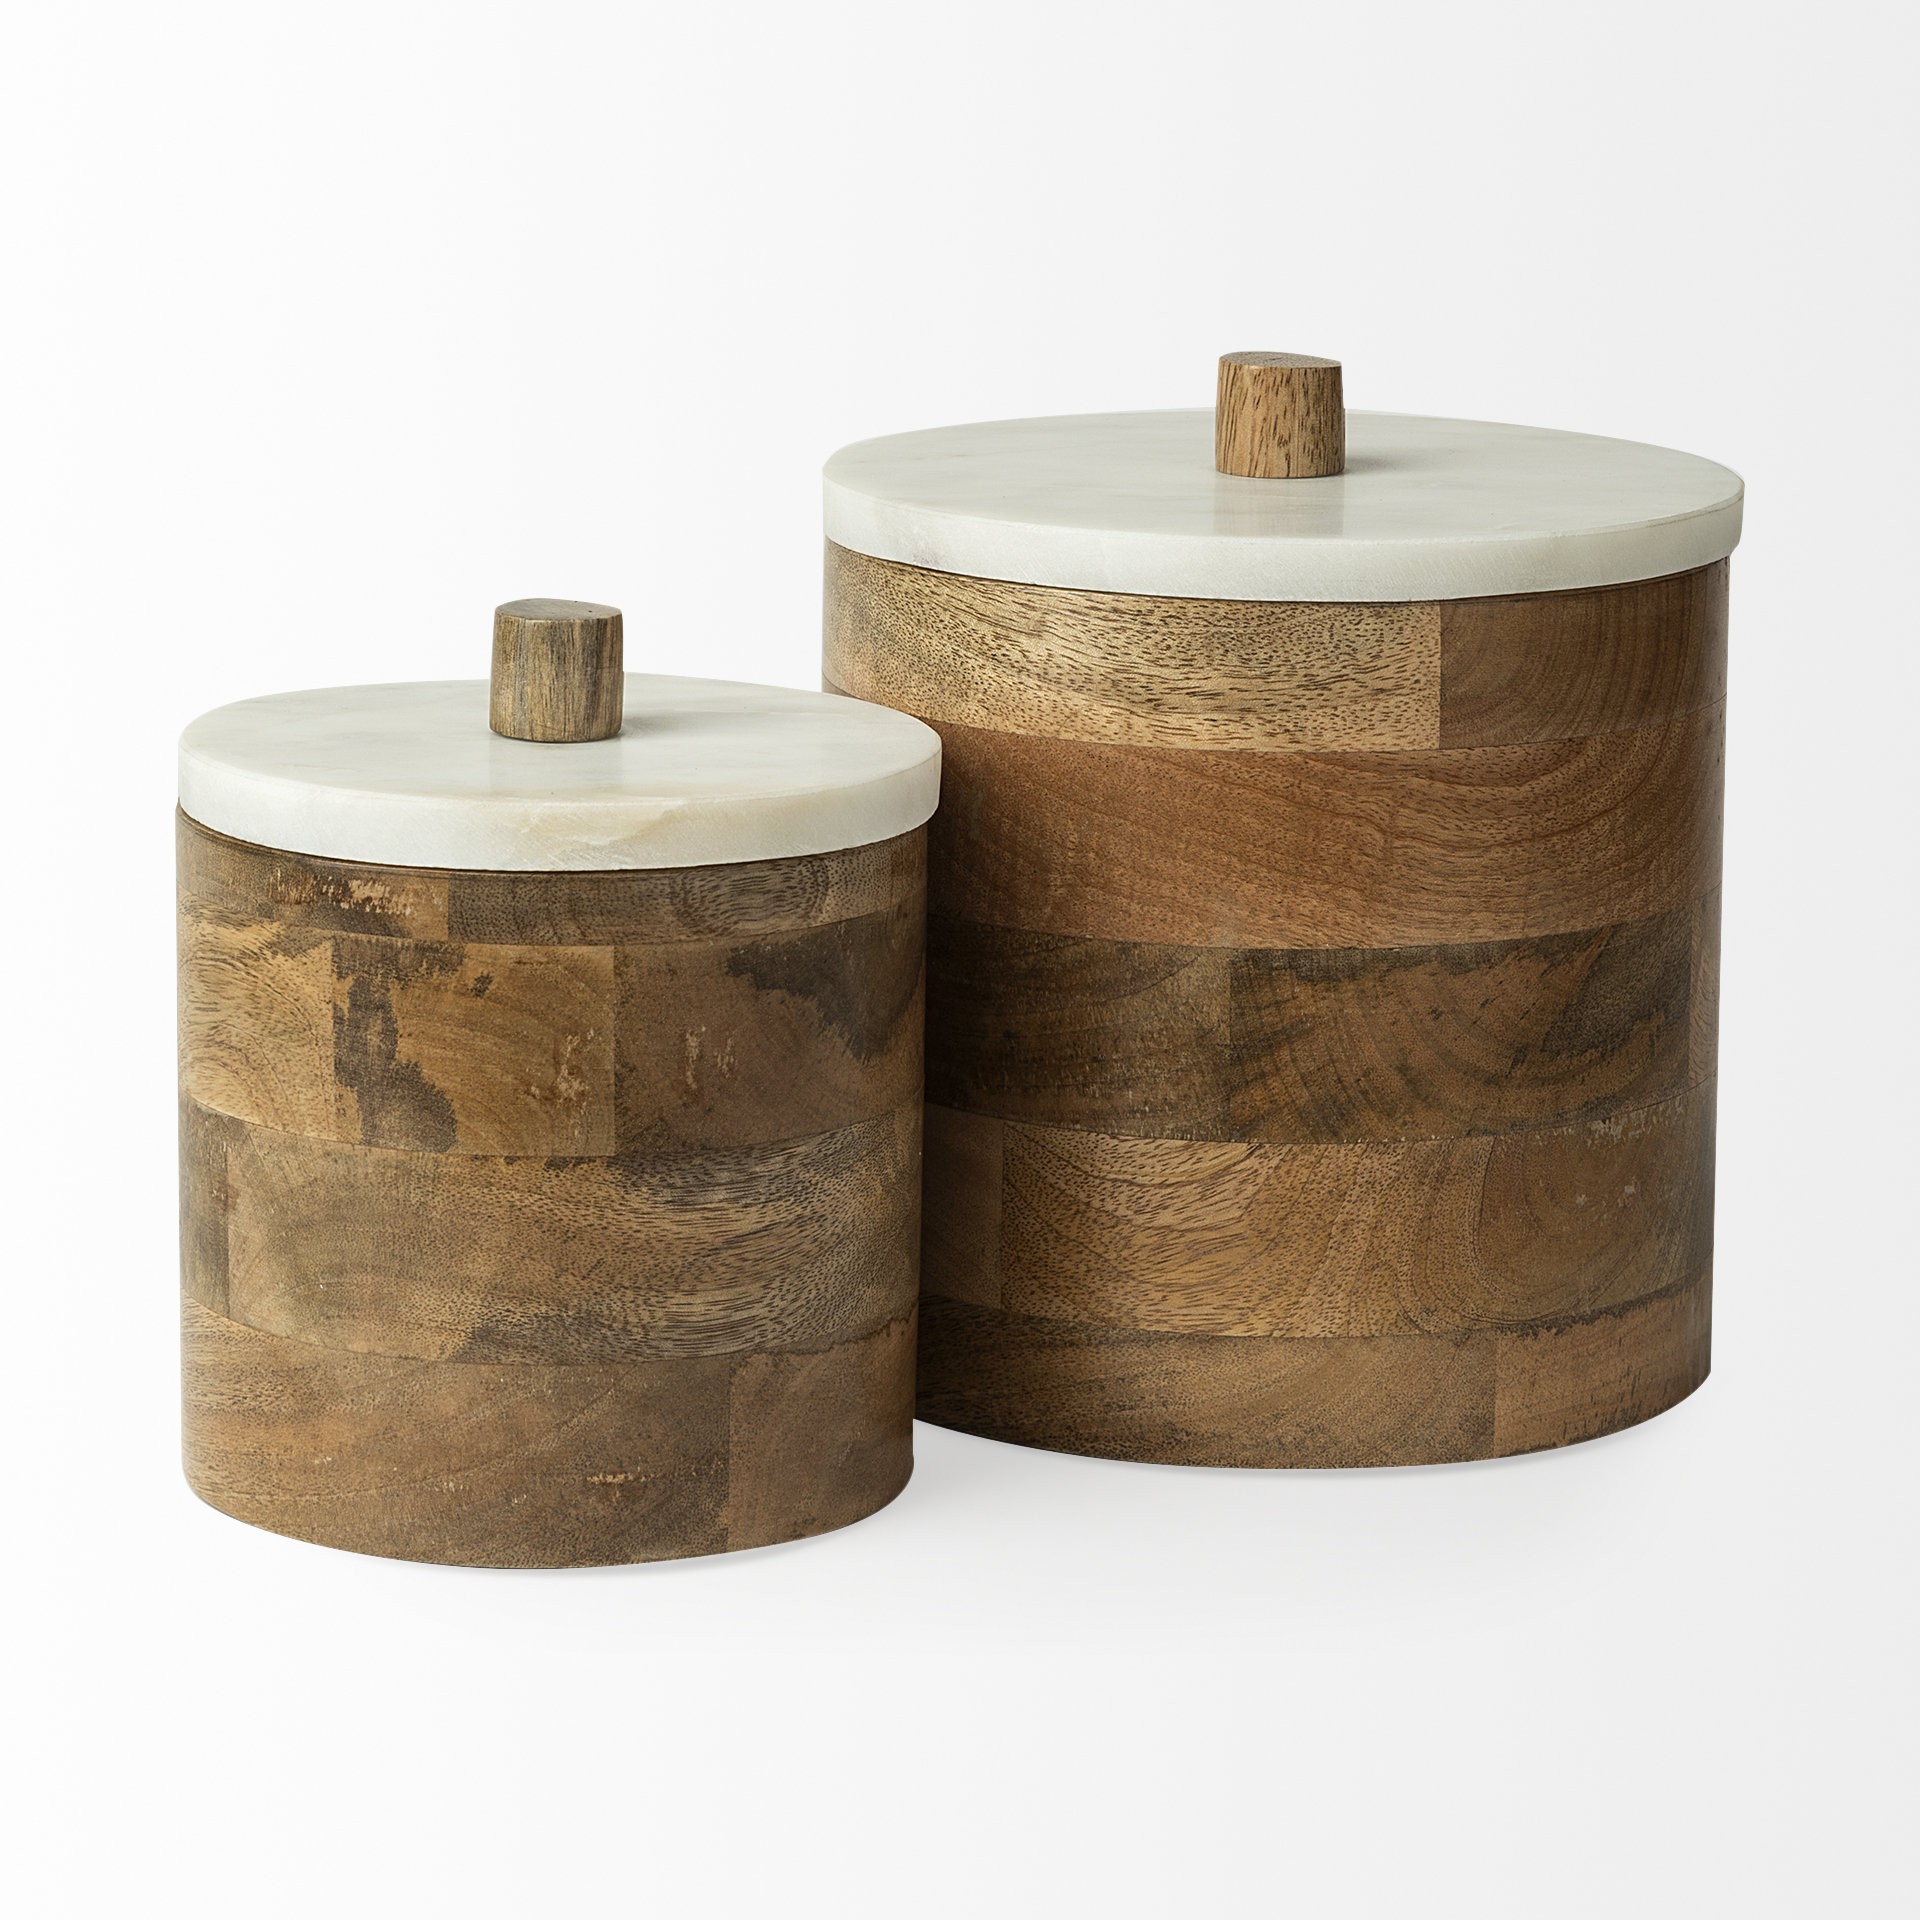 Petite Brown Wooden Round Storage Box